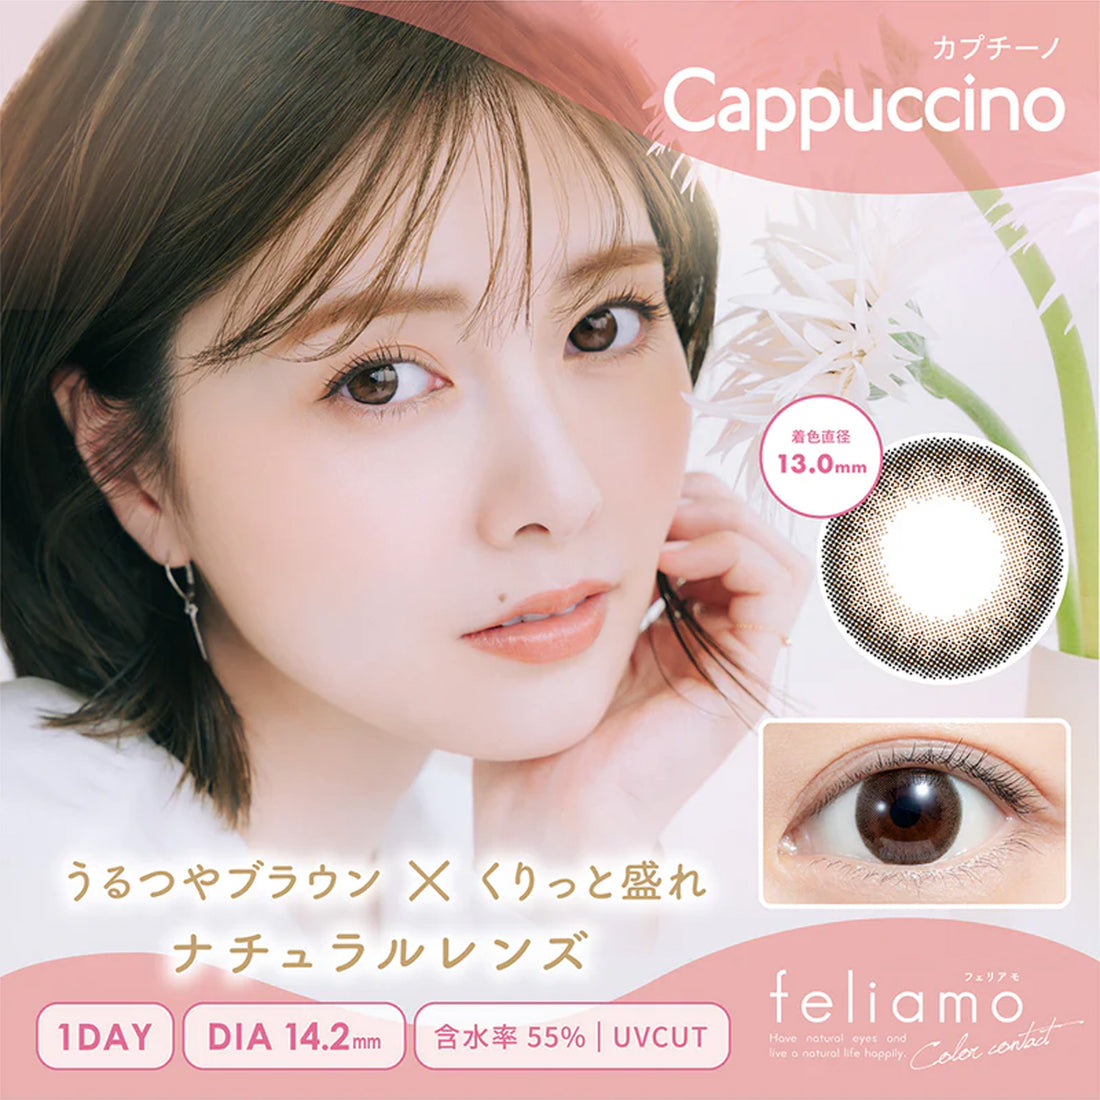 Feliamo Daily Contact Lenses-Cappuccino 10lenses